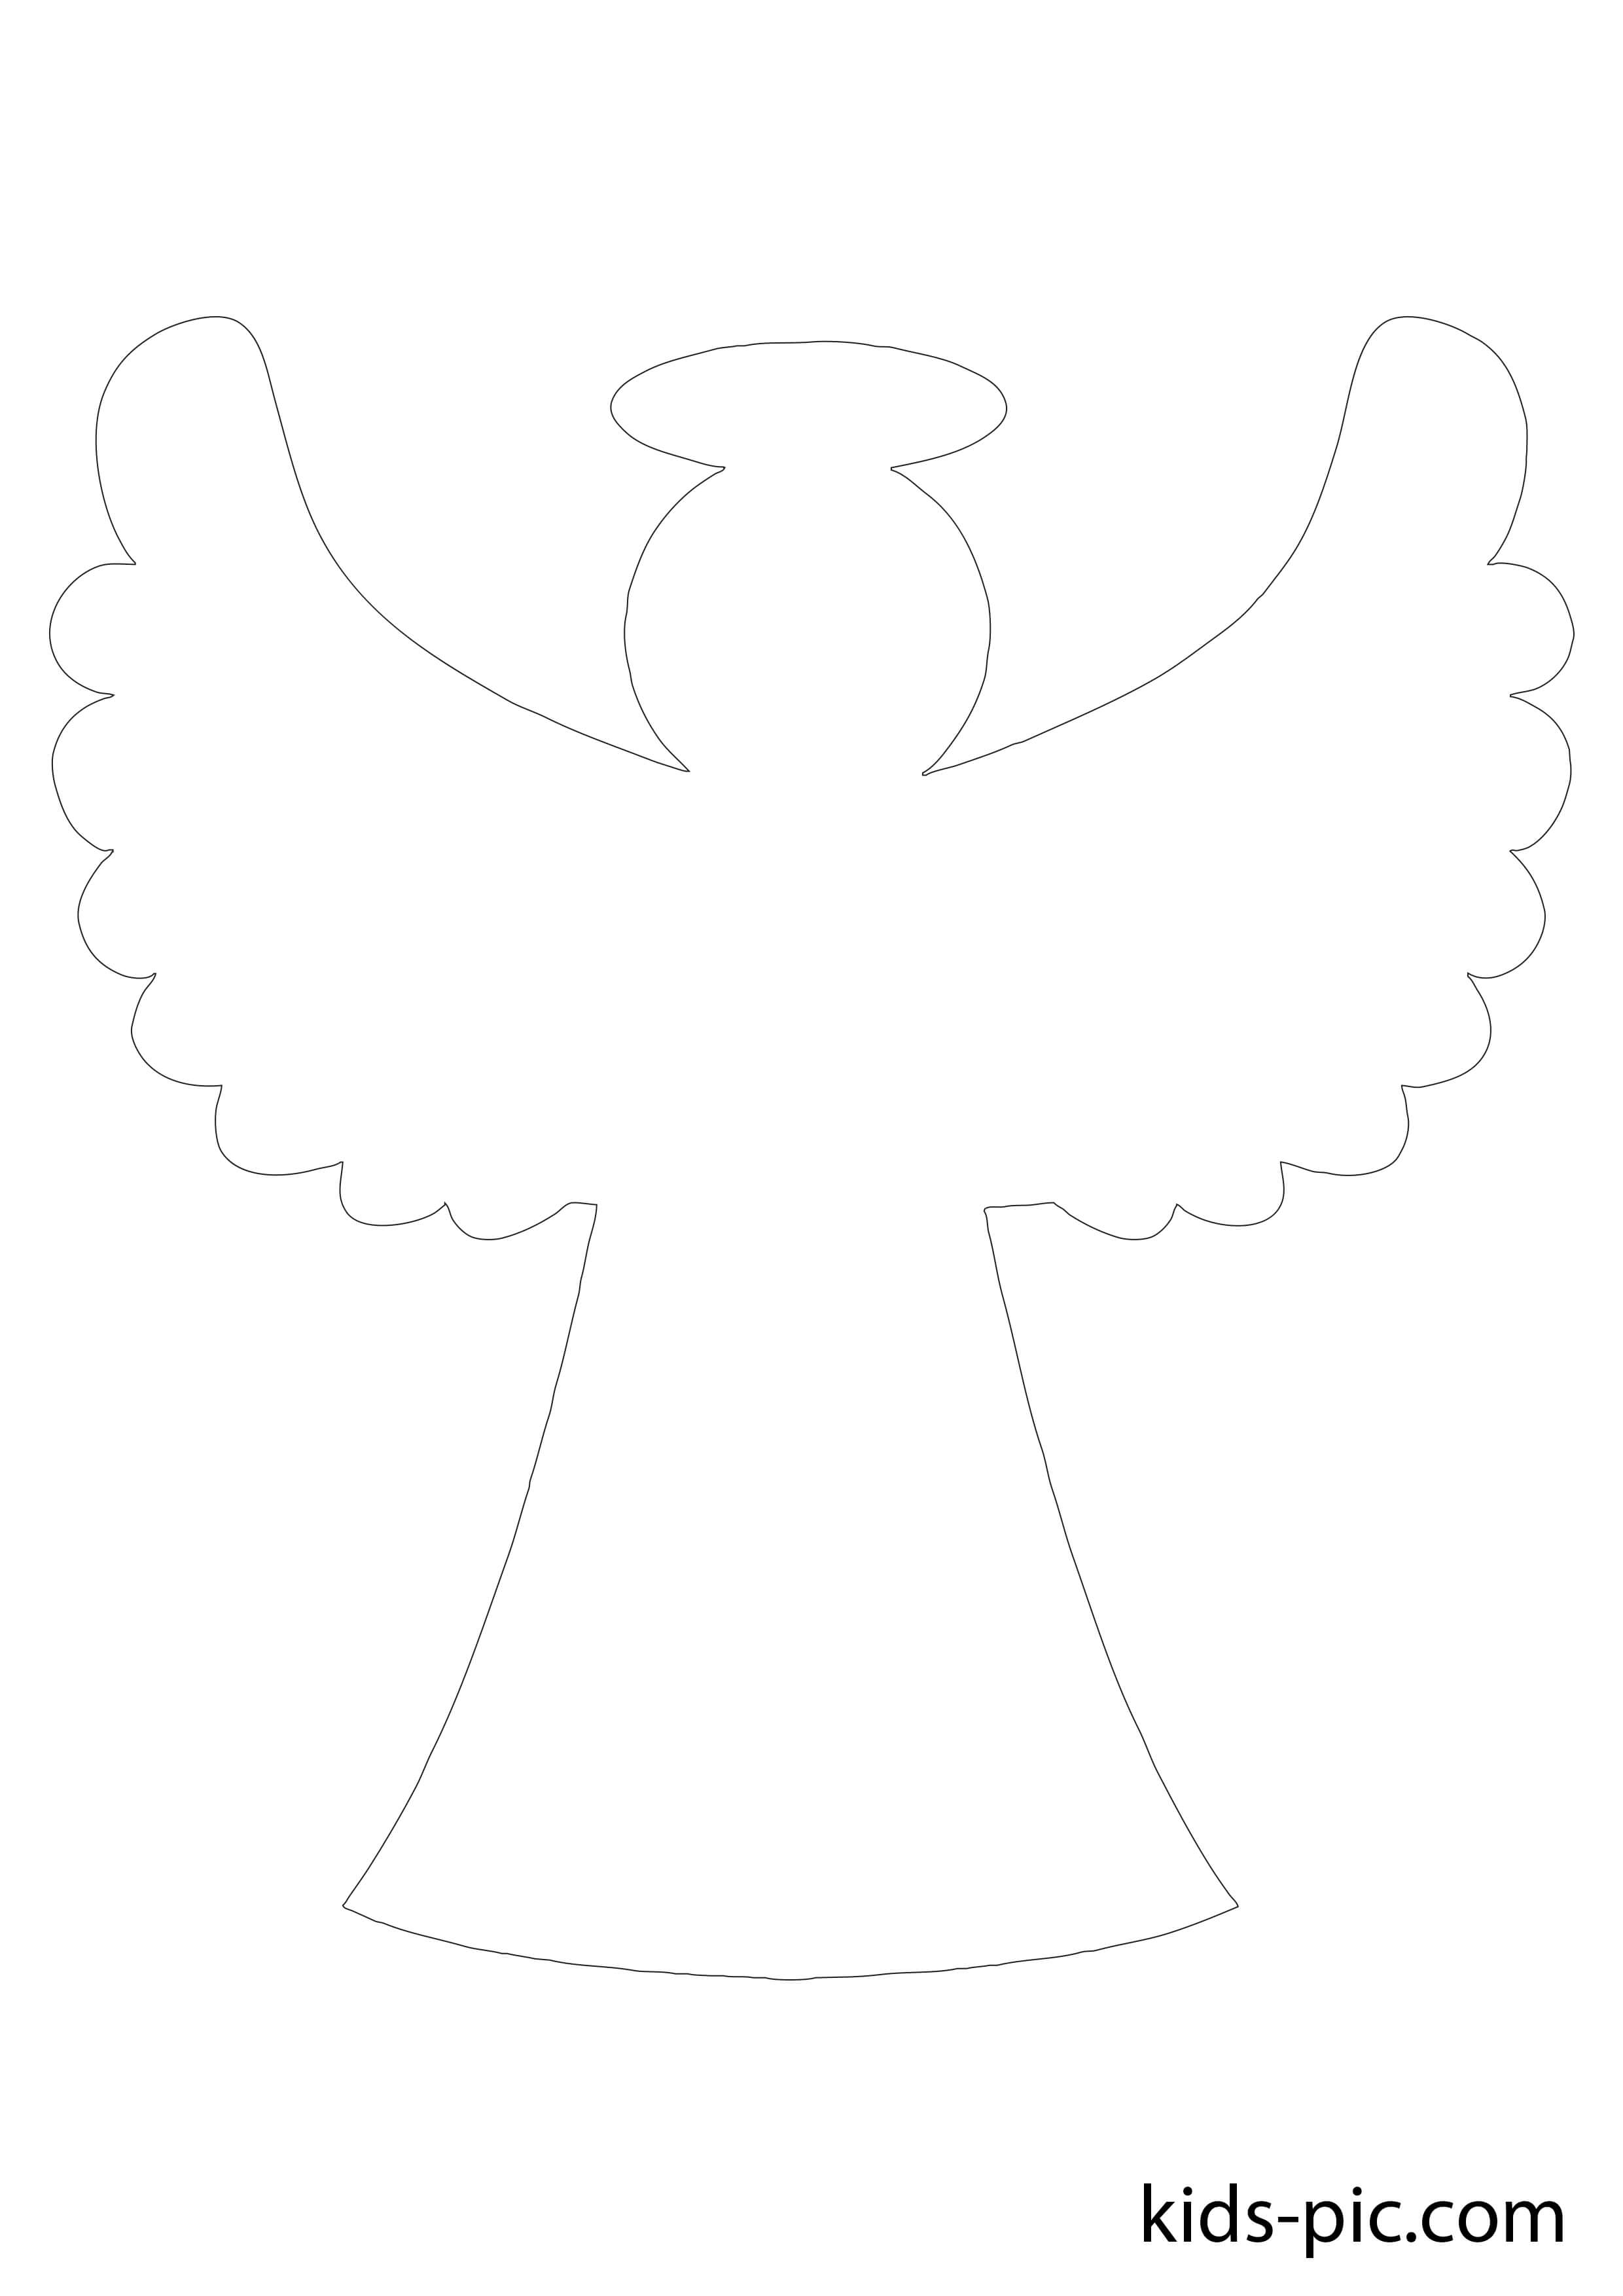 Ангел из бумаги своими руками: мастер-класс с шаблонами для вырезания